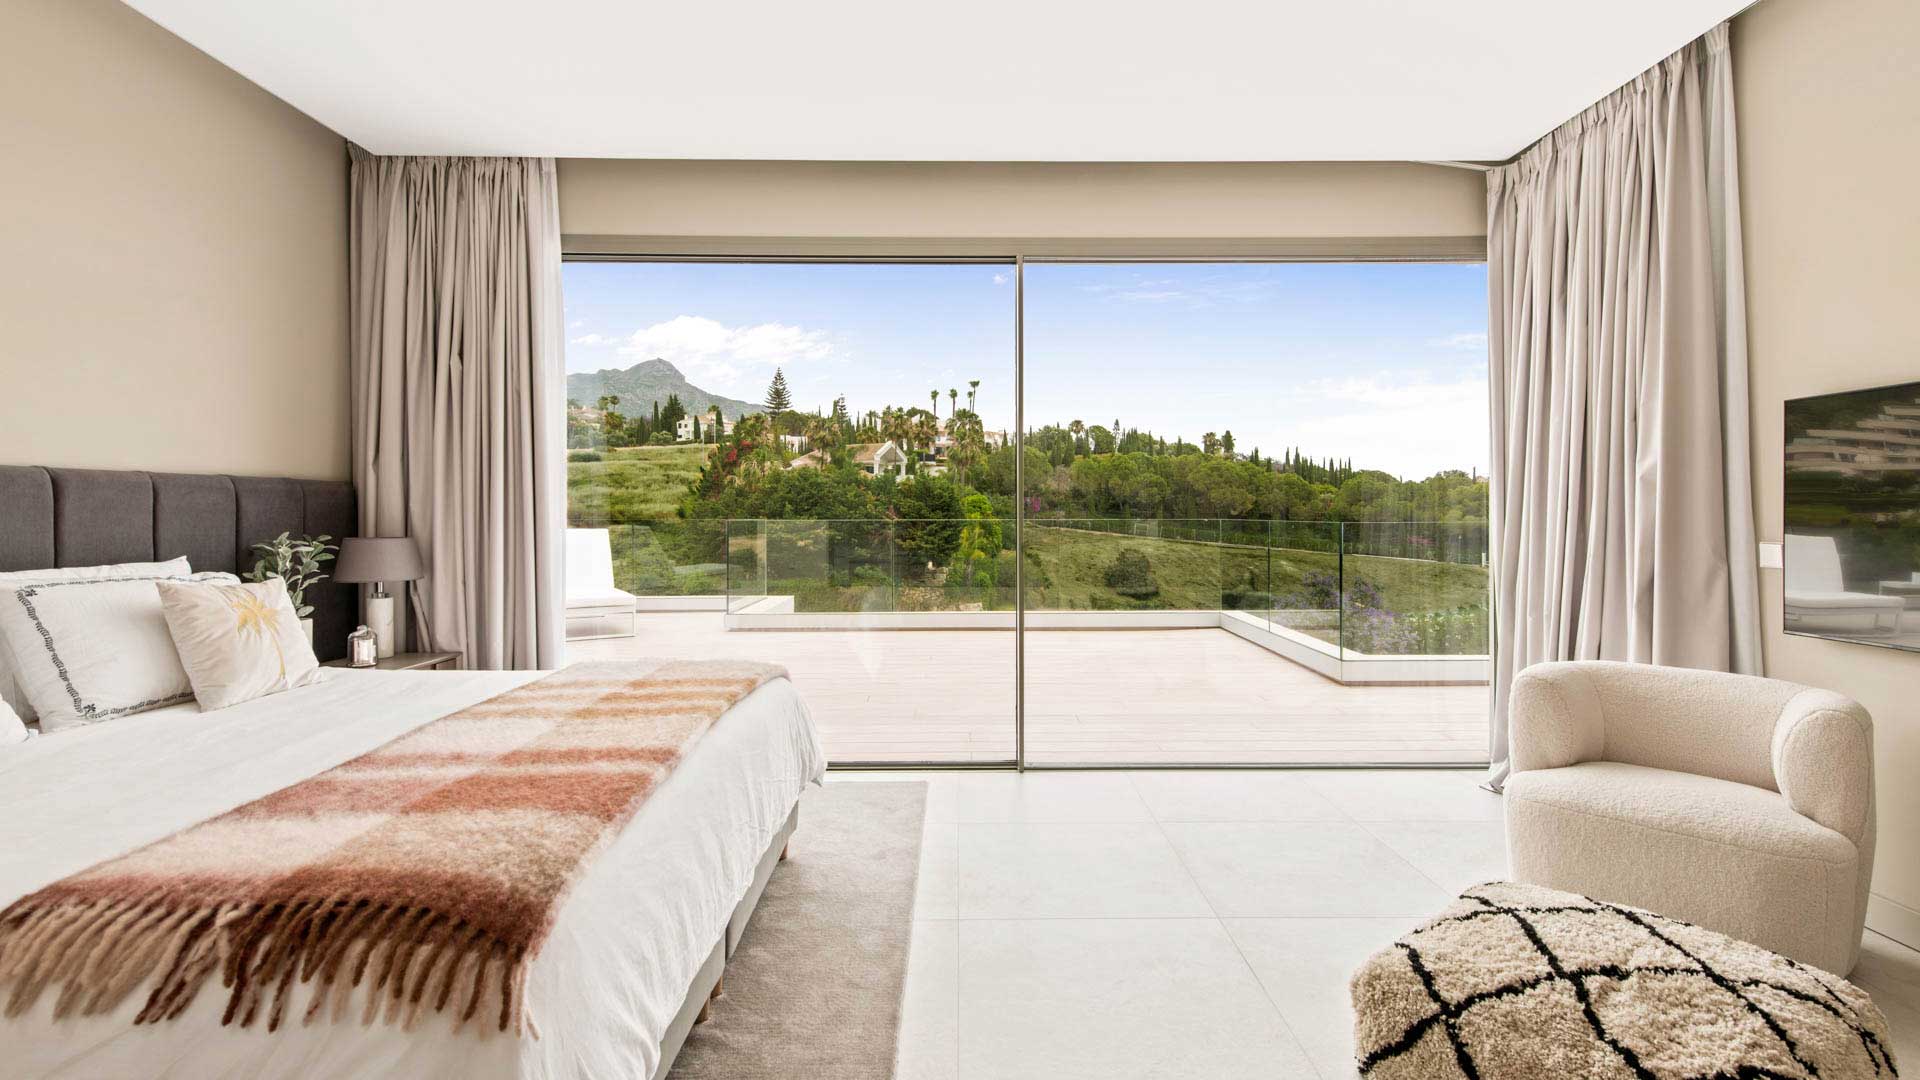 5 bedroom Villa in Los Naranjos, Marbella